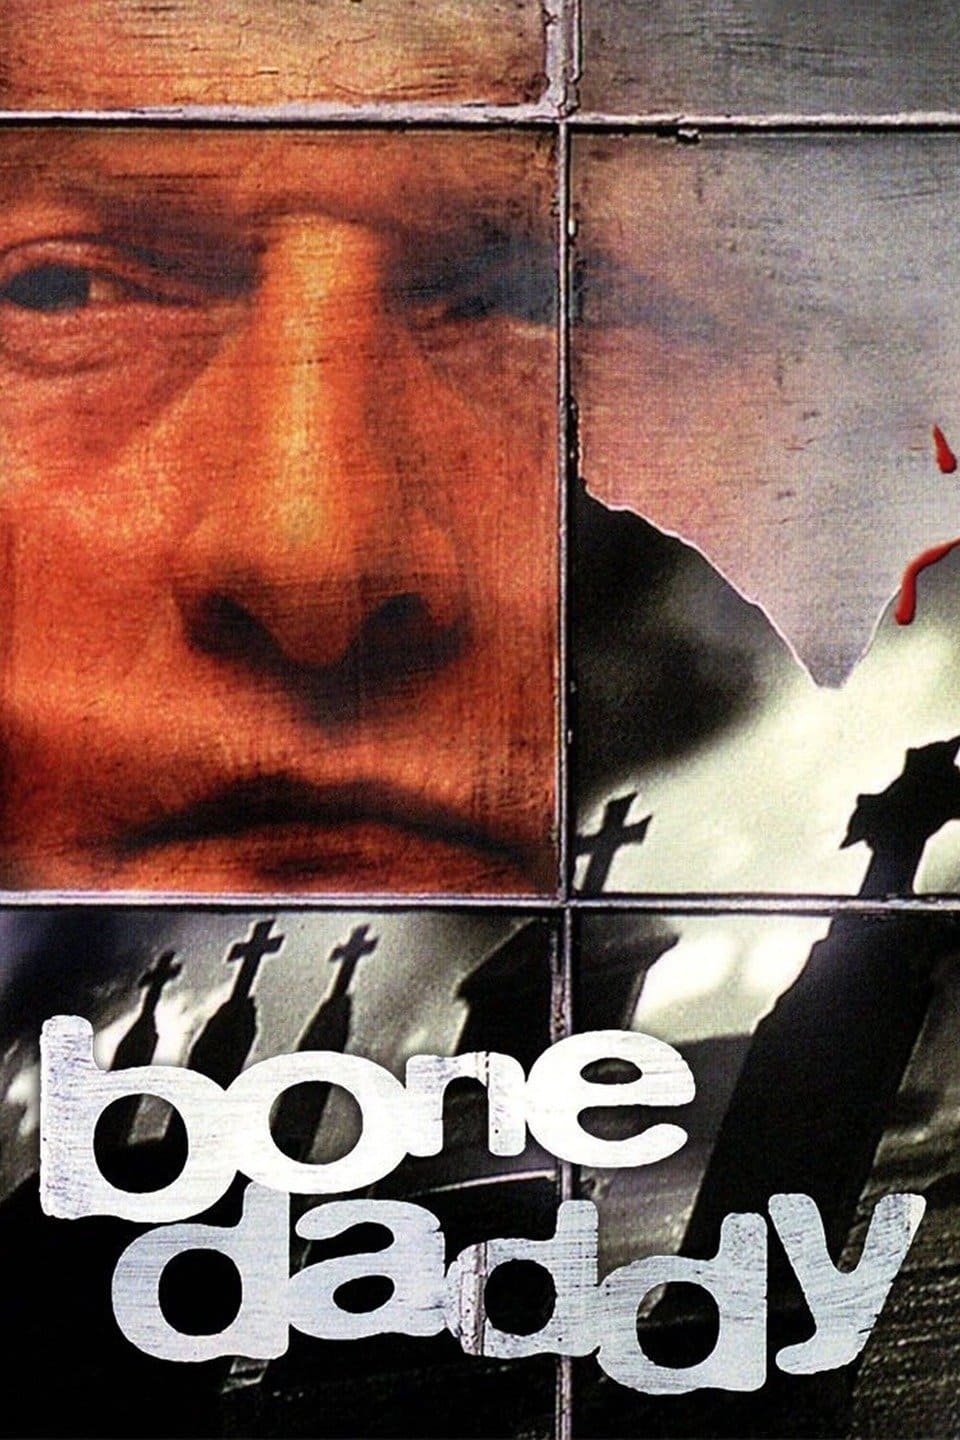 Bone Daddy - Bis auf die Knochen (1998)